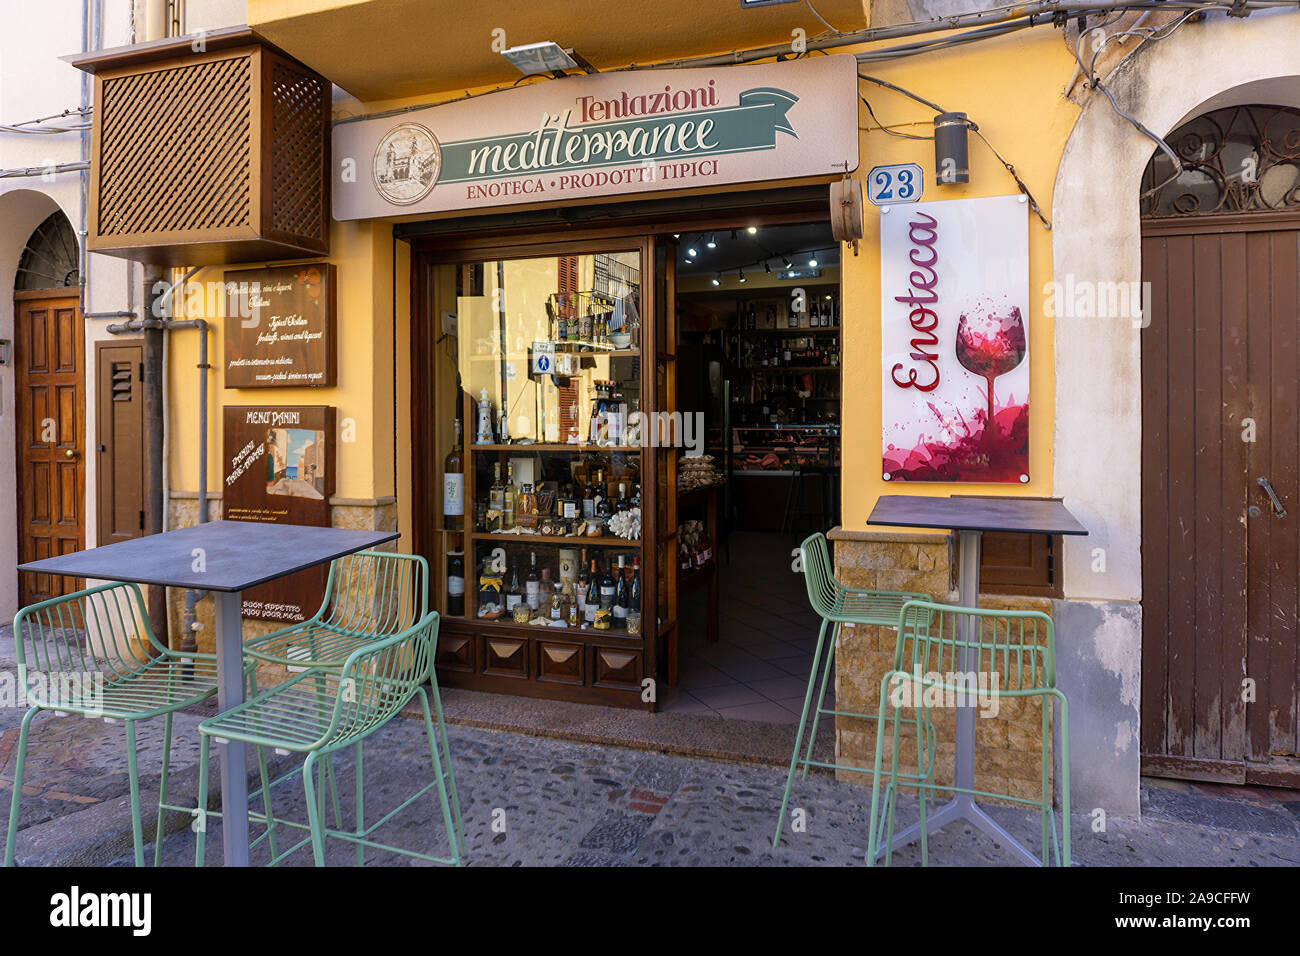 Un petit bar à vin/fines à Cefalú, Sicile. La ville possède de nombreux petits bars et restaurants parmi ses rues étroites Banque D'Images